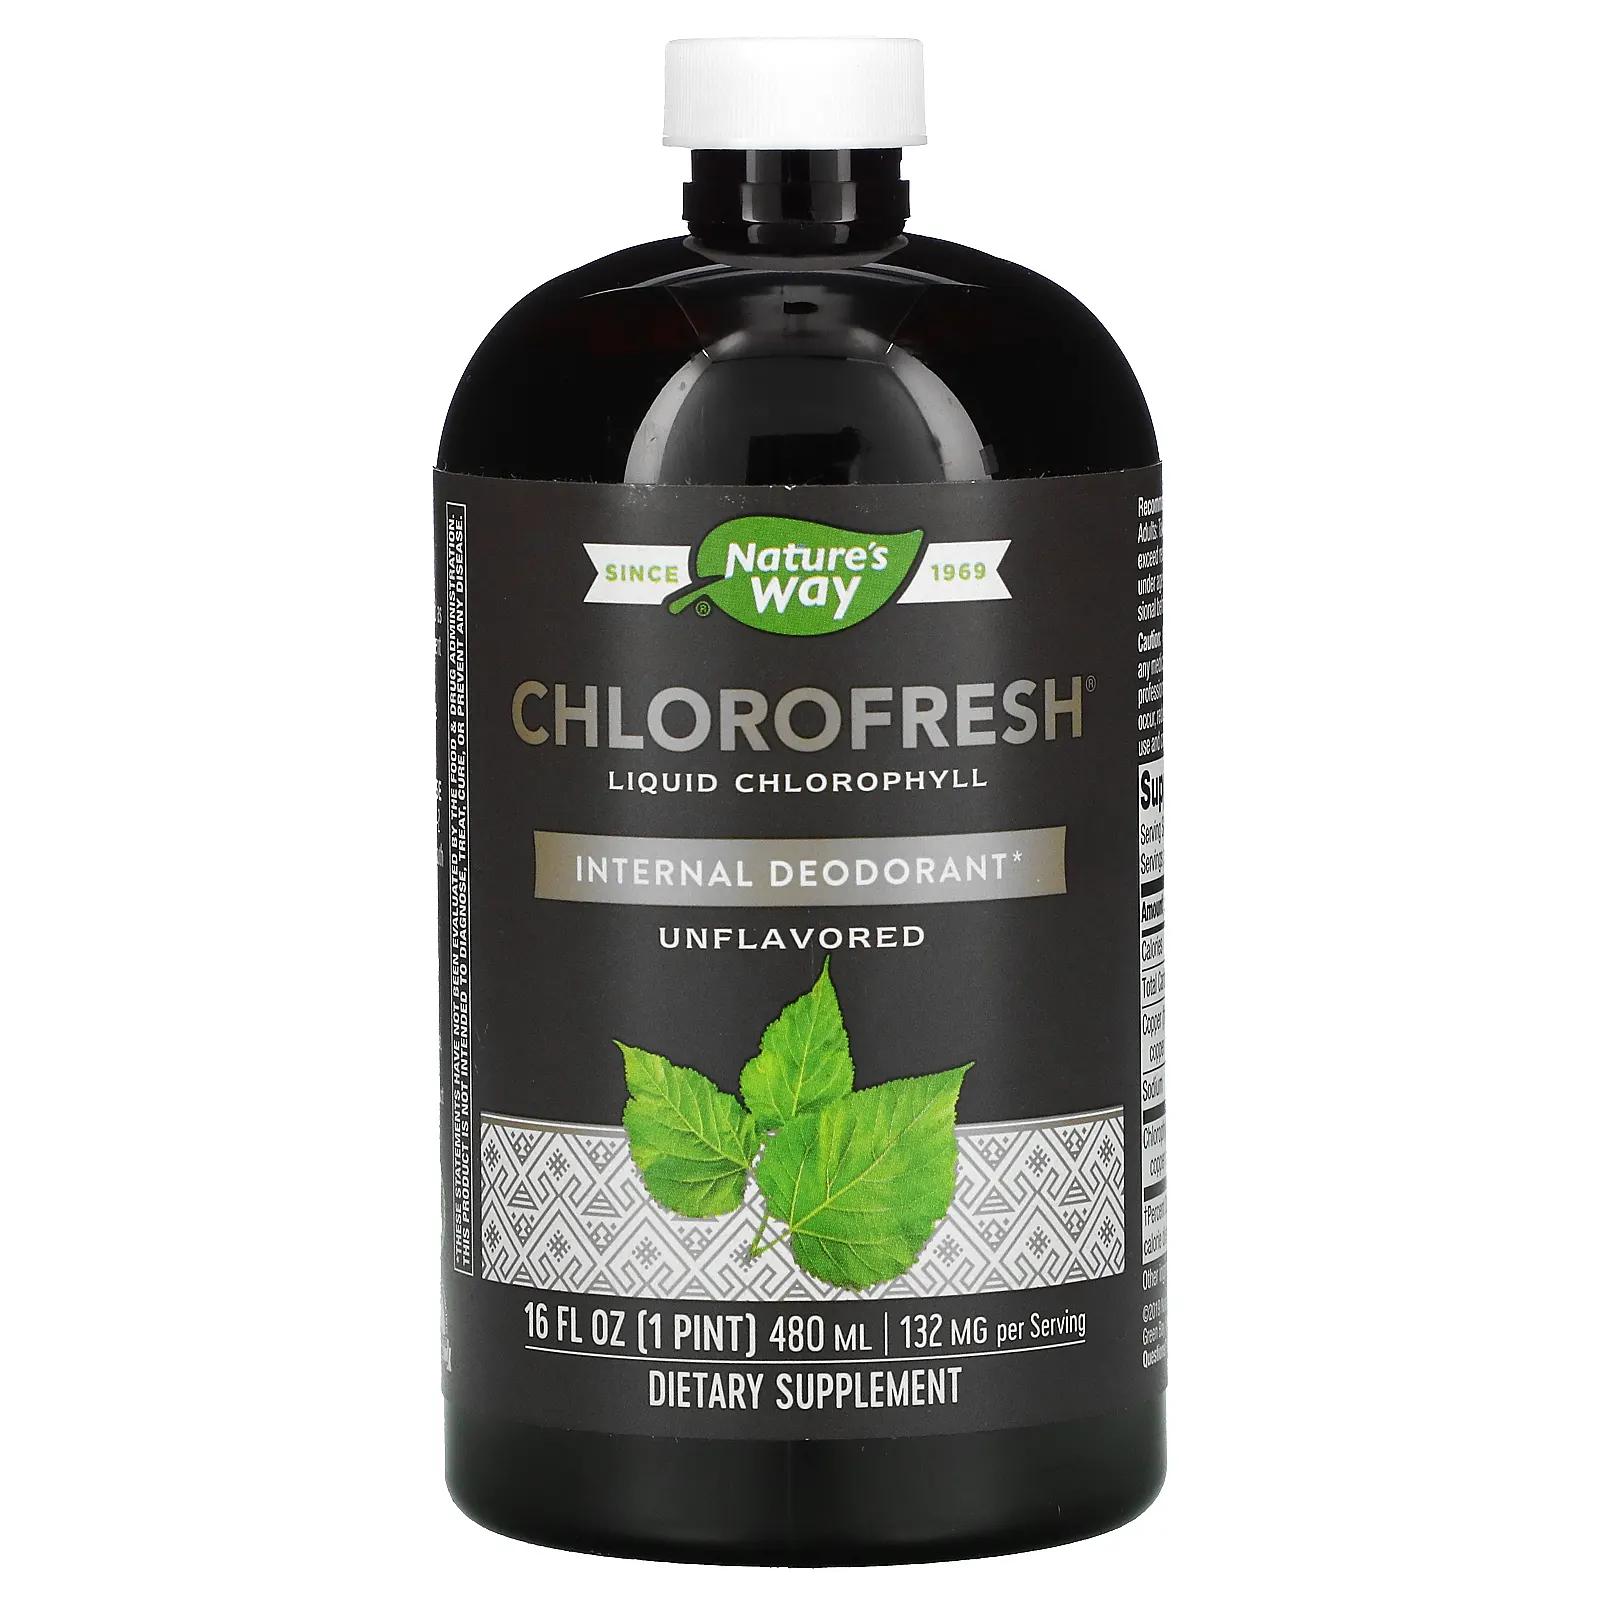 Nature's Way Chlorofresh Liquid Chlorophyll Unflavored 16 fl oz (473 ml) цена и фото